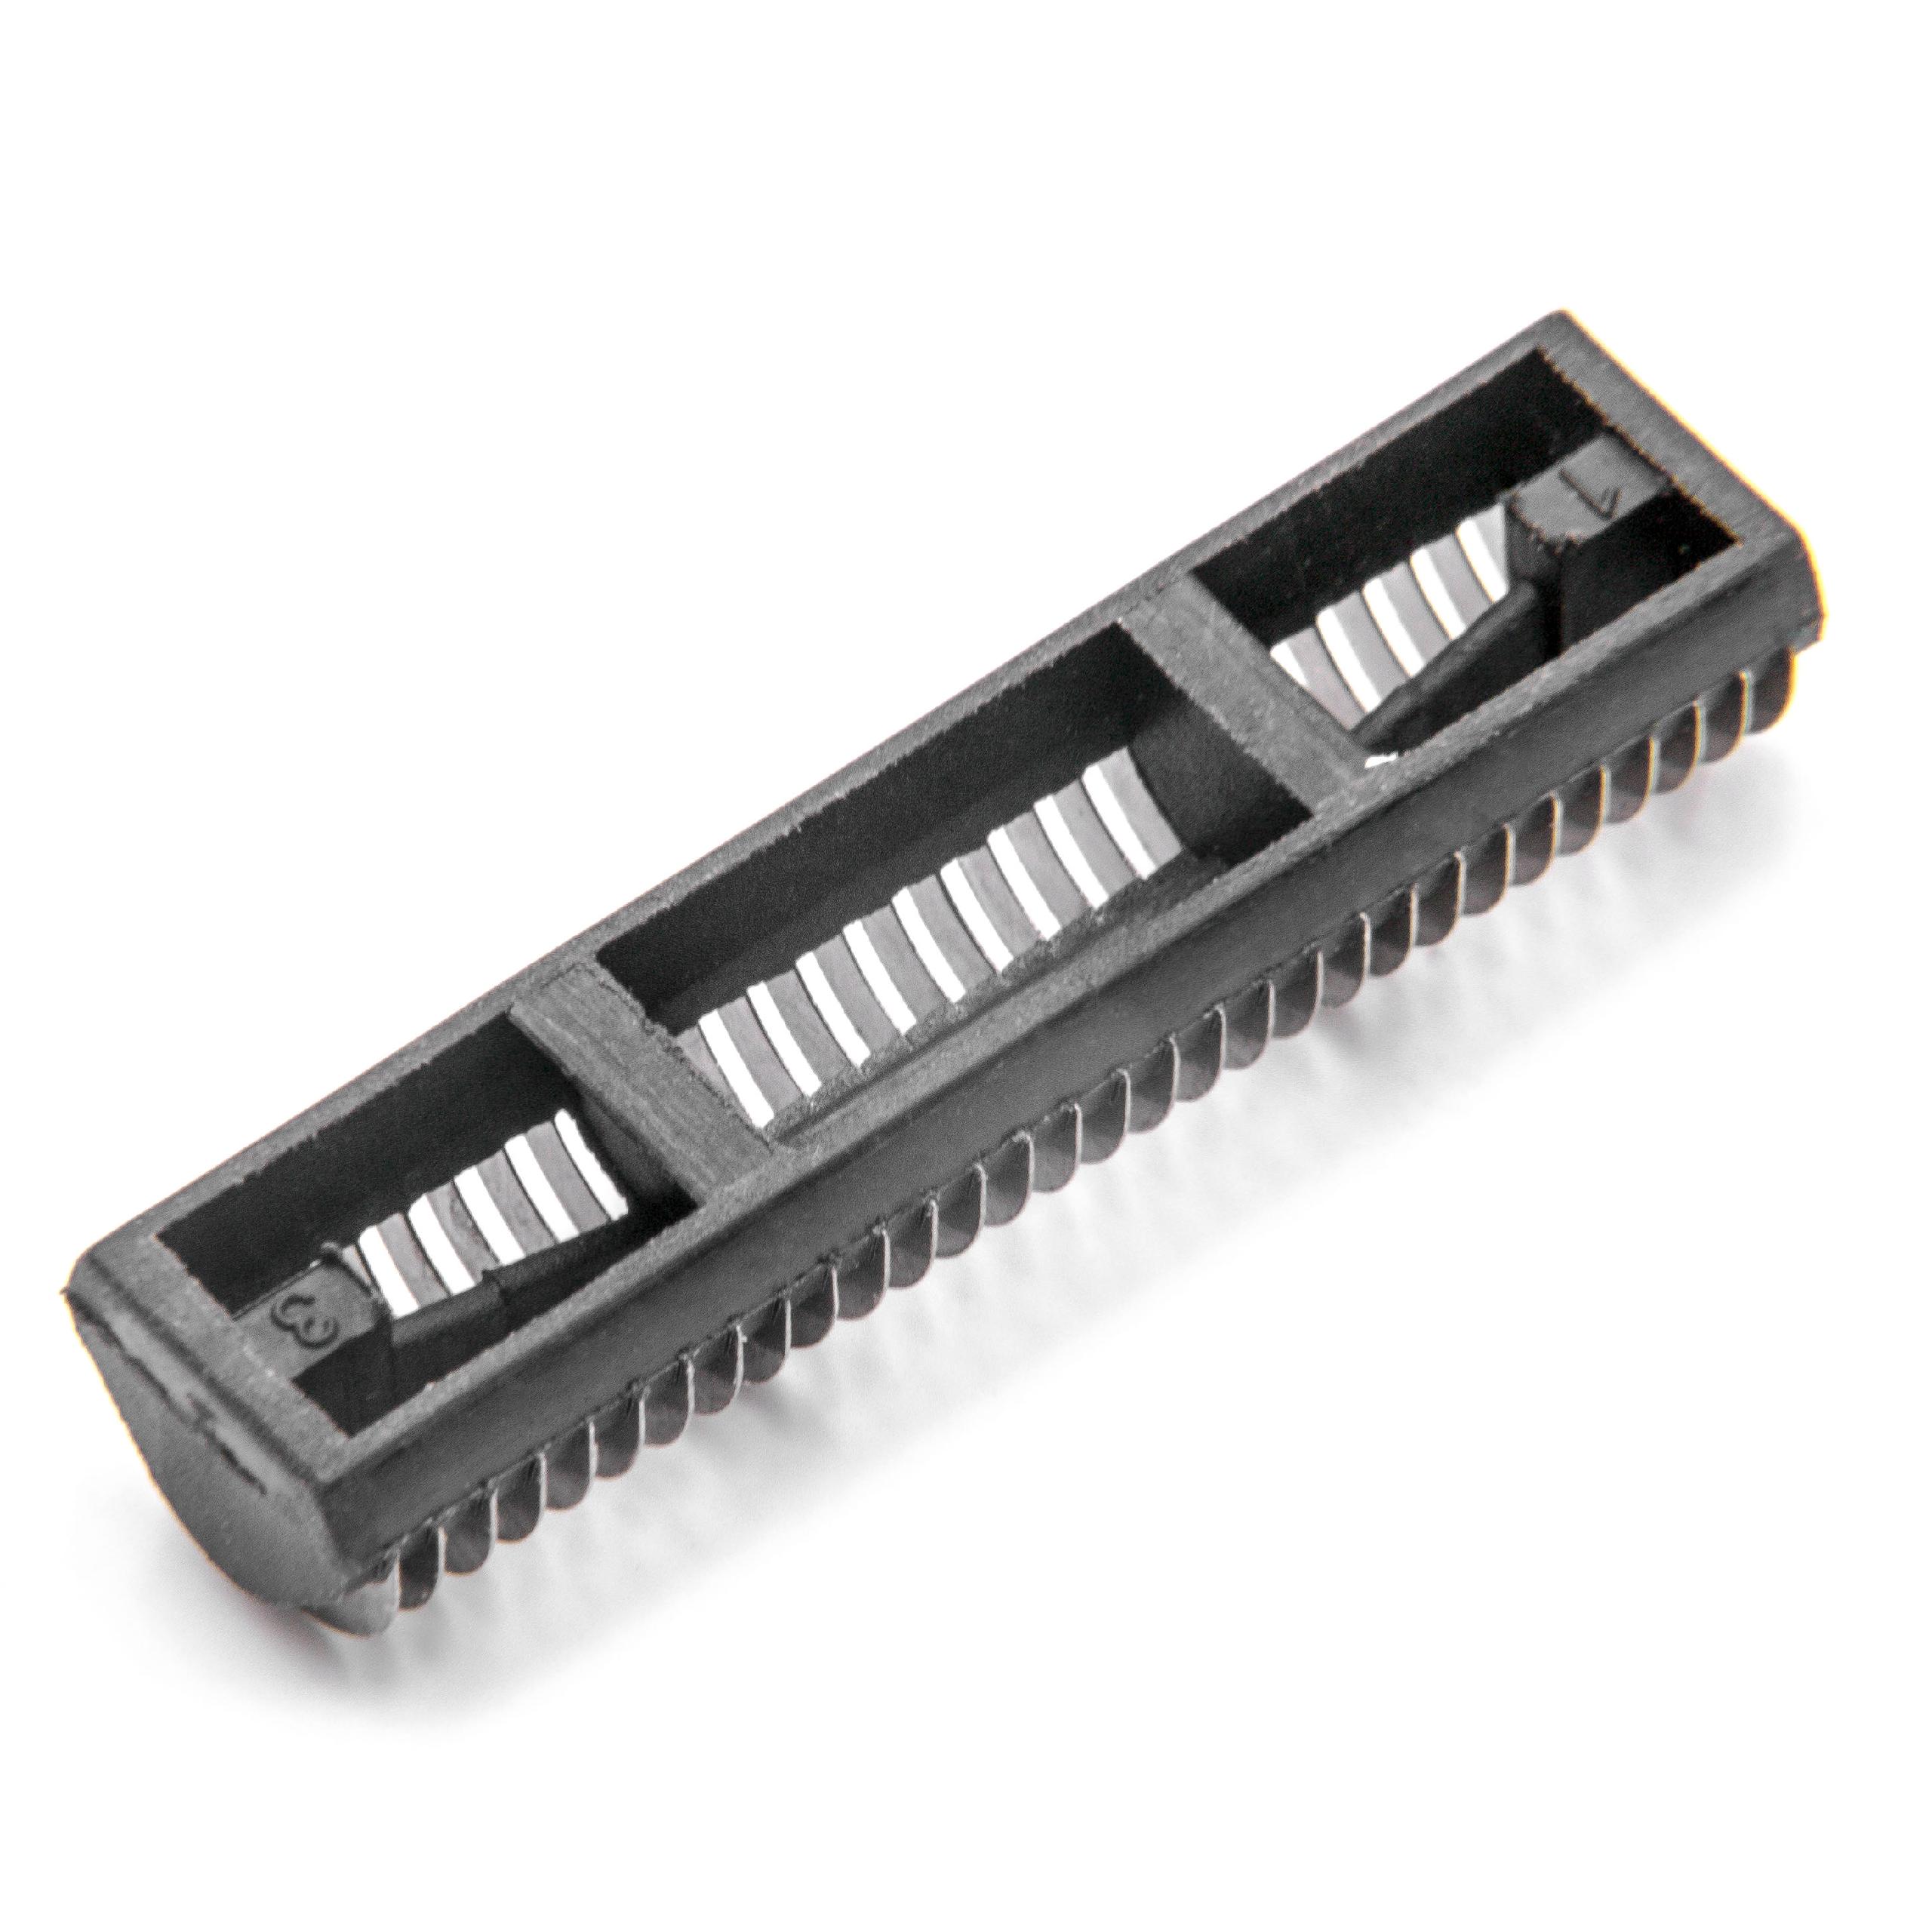 Combi Pack Shaver Part suitable for Braun 1008 Razor - Foil + Blades, Black/Silver